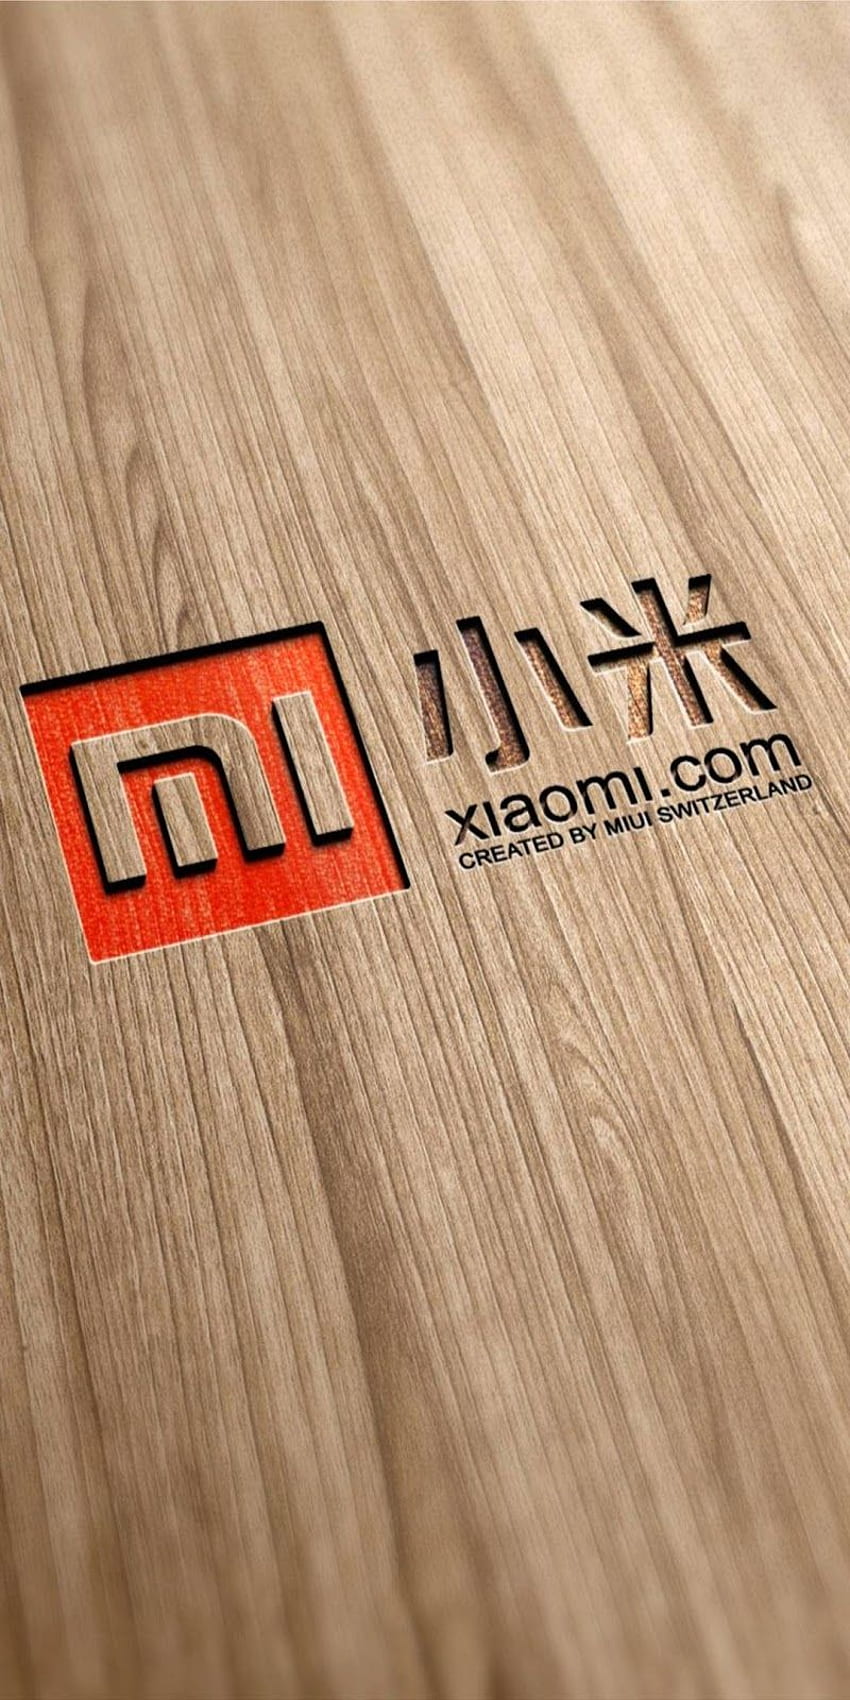 전화 로고 Xiomi - Mi 로고, Xiaomi 로고 HD 전화 배경 화면